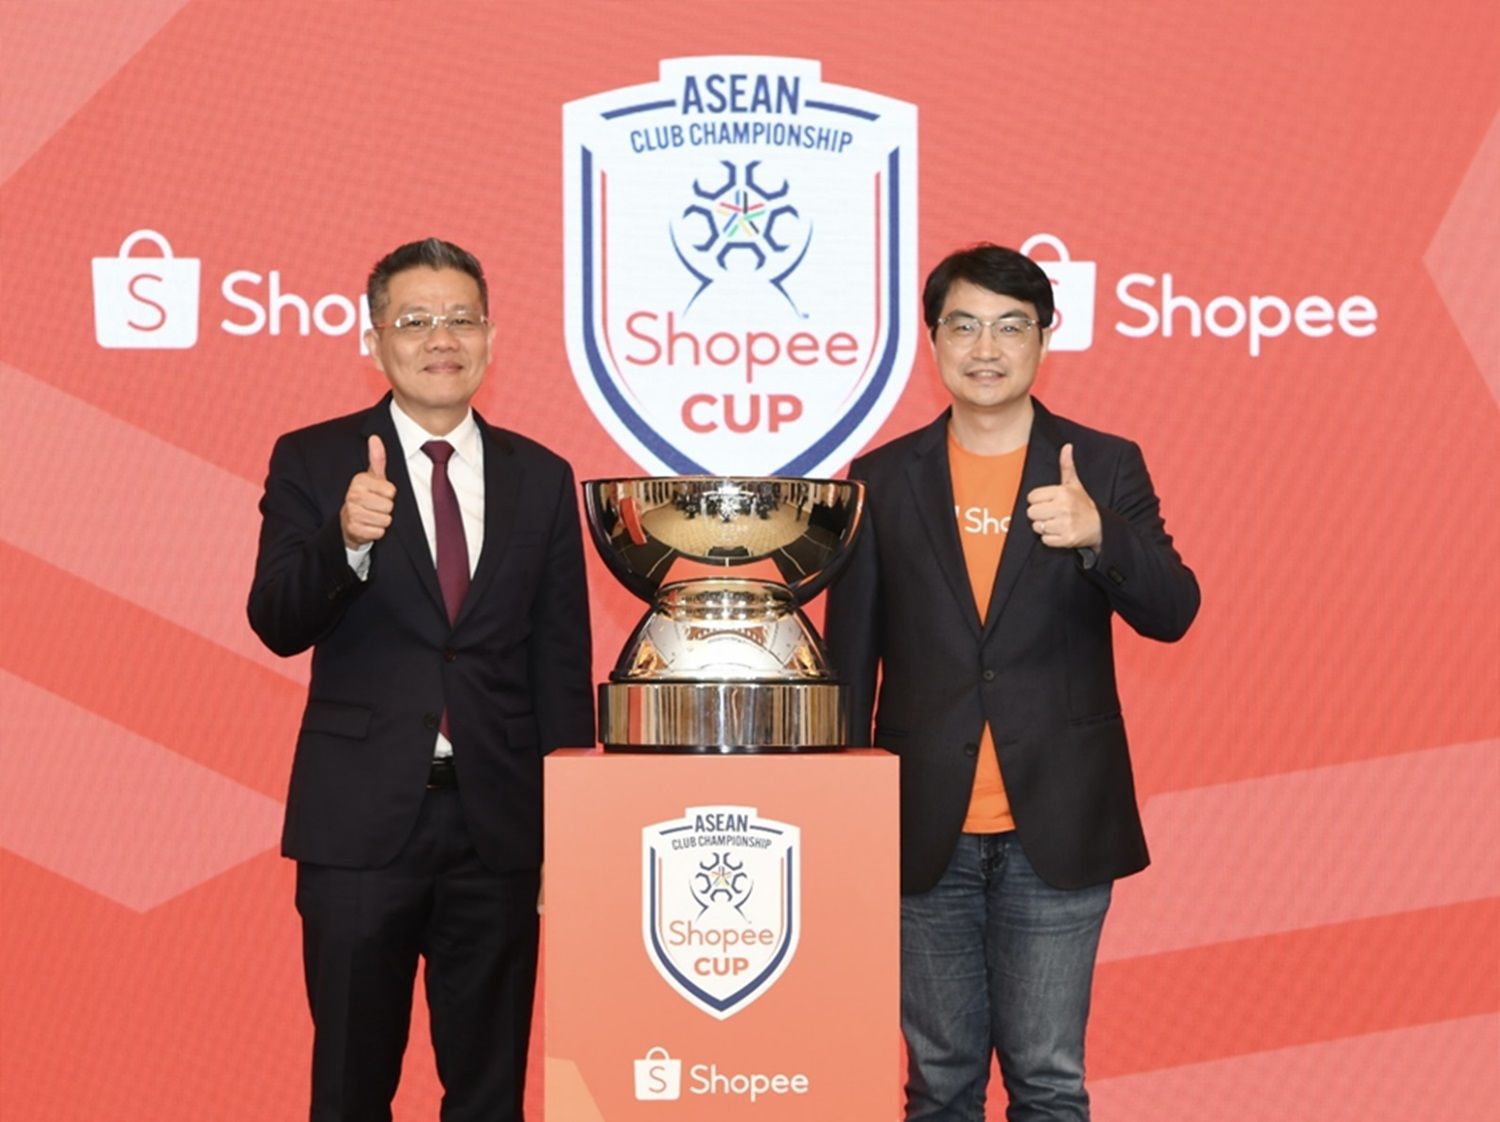 Shopee Cup ASEAN Club Championship Segera Digelar, Kompetisi Sepak Bola Antarklub Tertinggi di Asia Tenggara